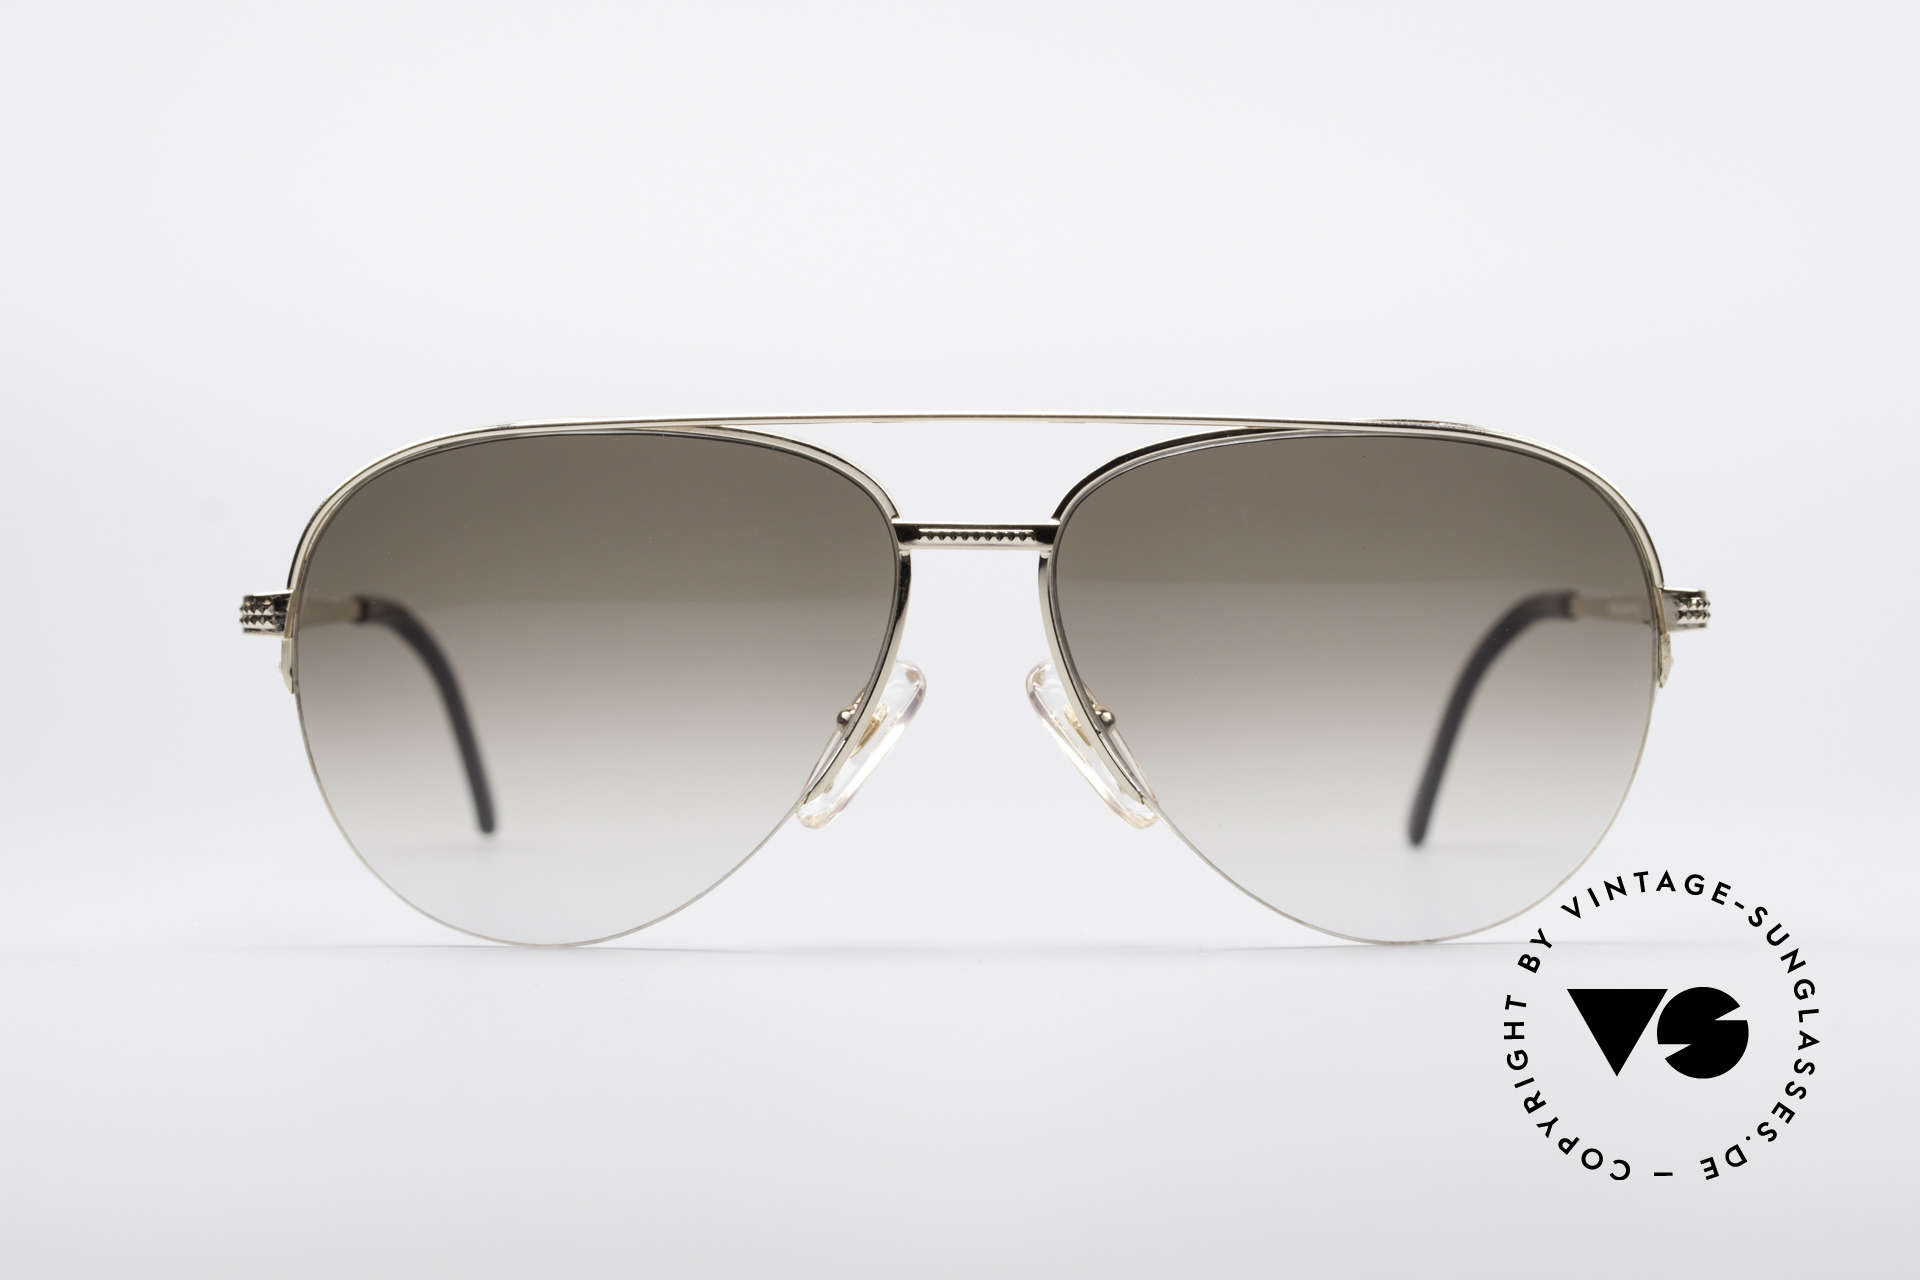 Sunglasses Christian Dior 2792 90's Aviator Frame